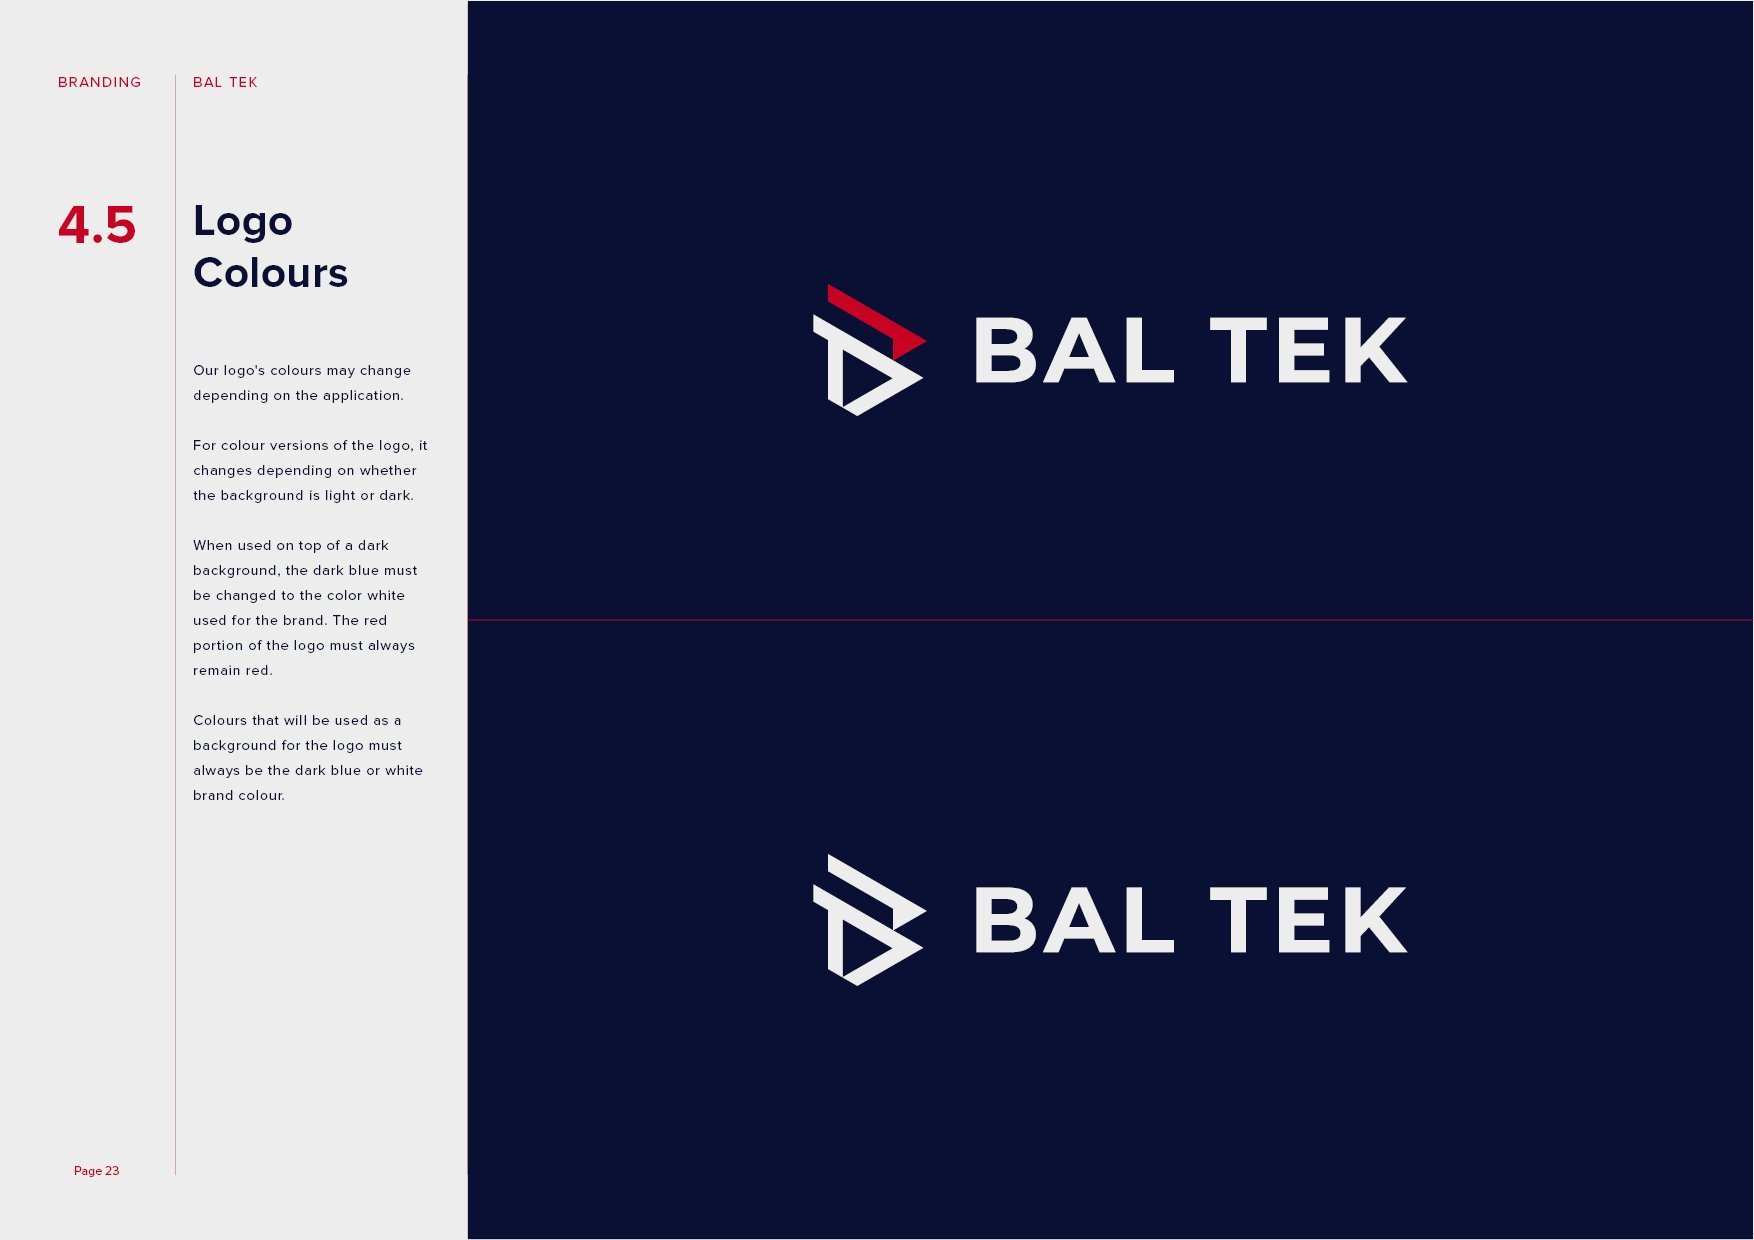 Bal Tek Brand Guidelines23.jpg